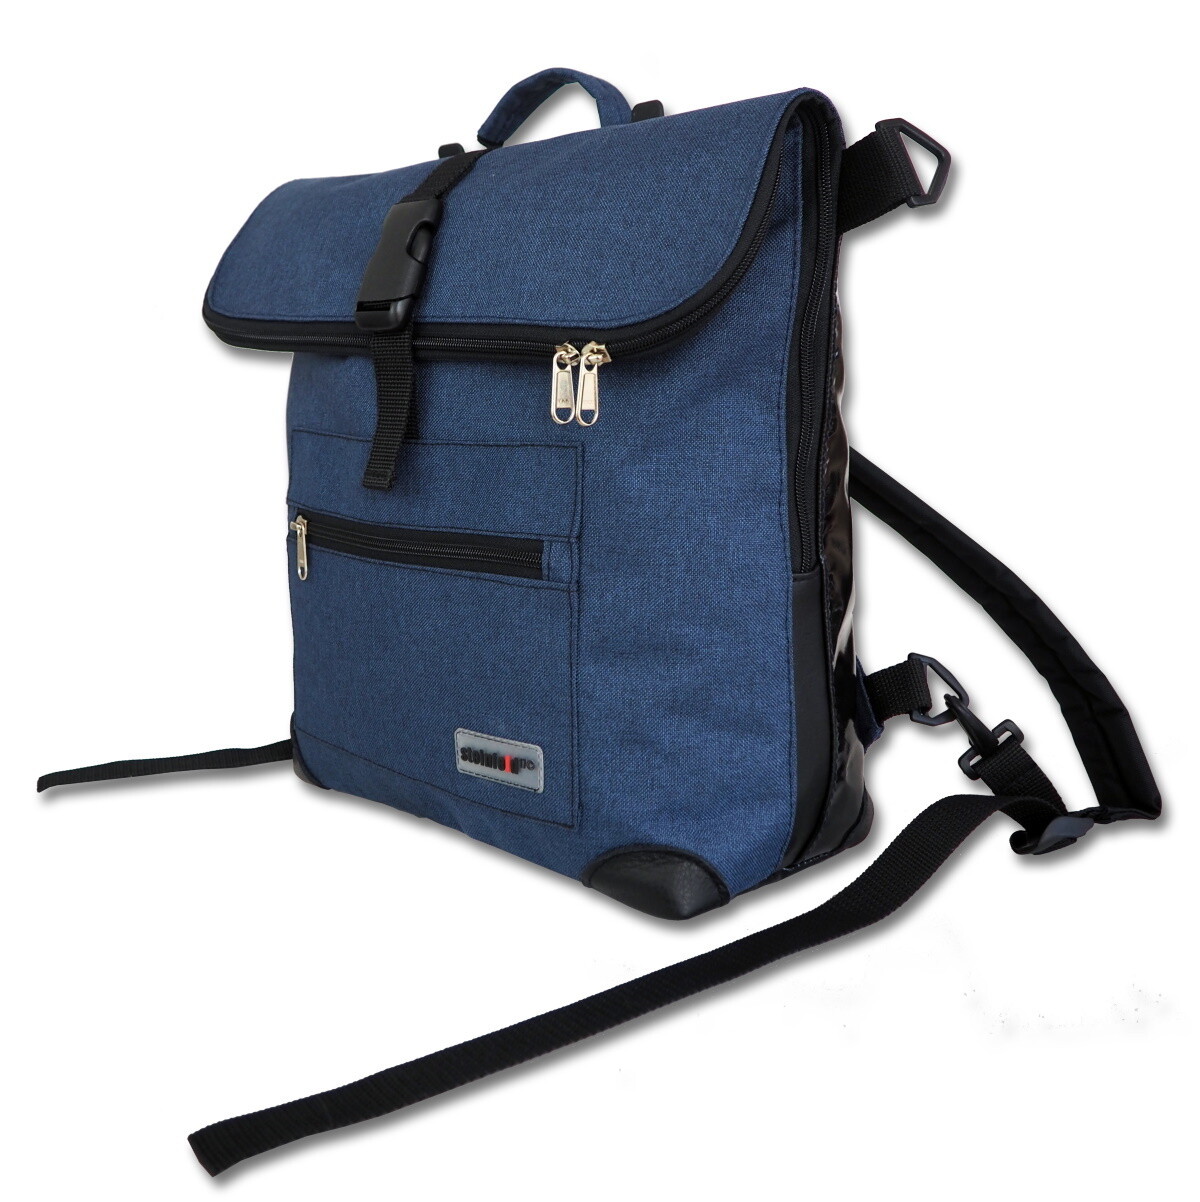 Gepäckträgertasche Radl-Ivy, die Kleine, PES/PVC-Plane-blau-schwarz